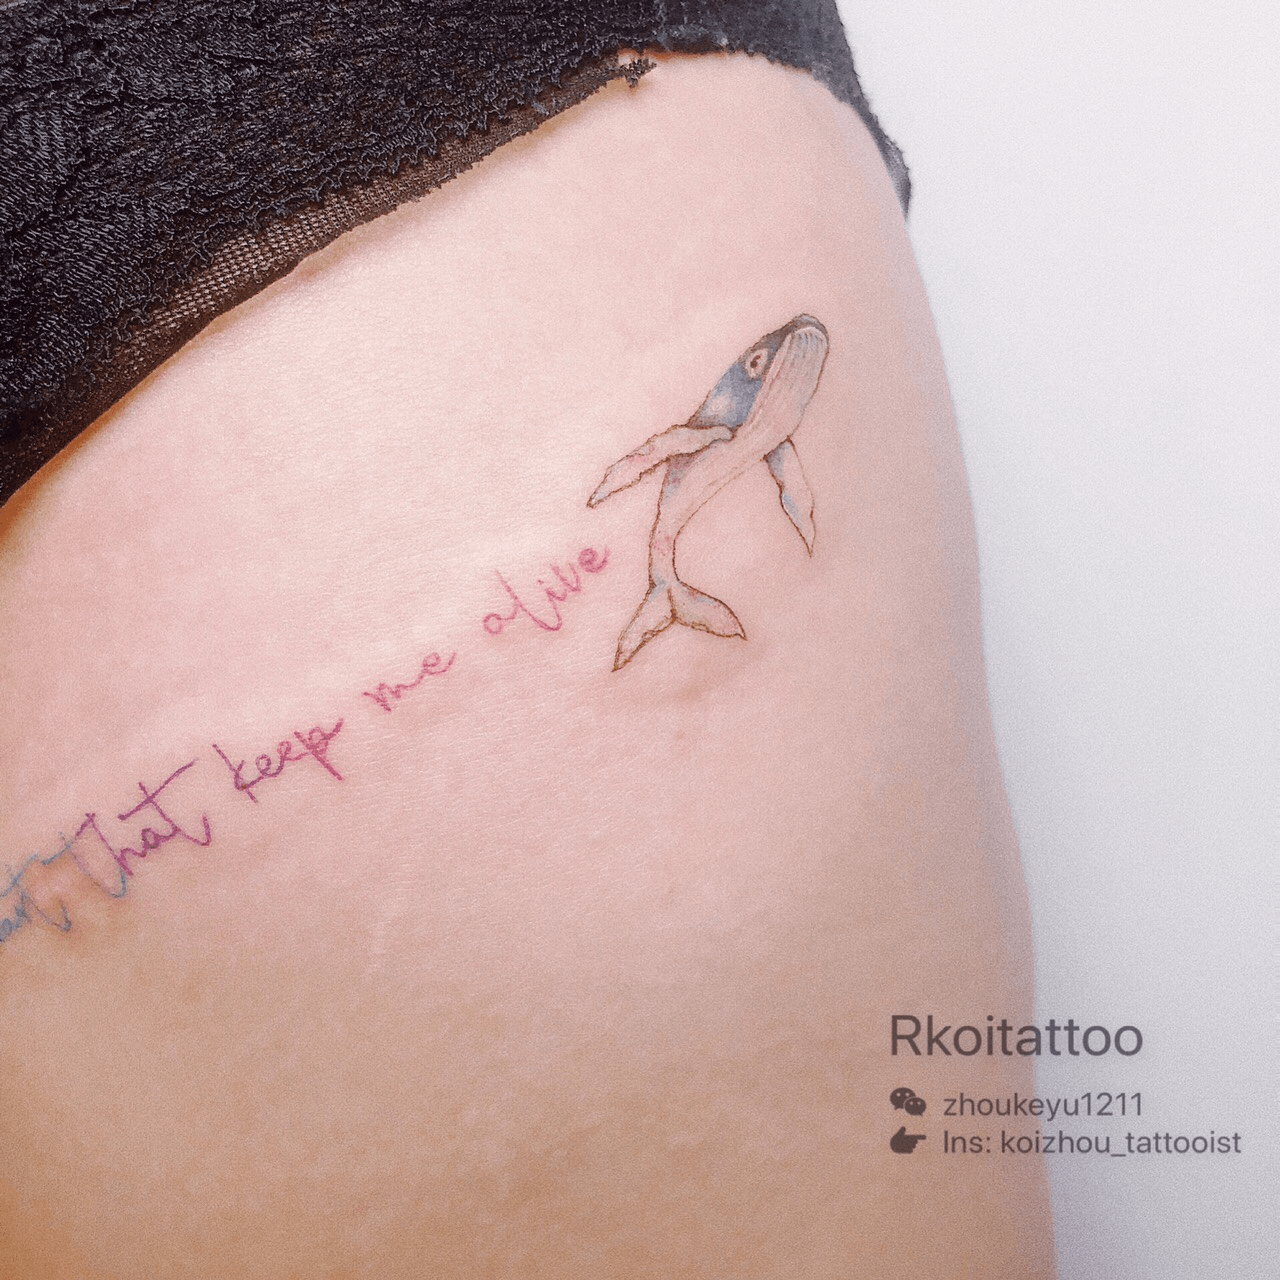 Black Outline Whale Tattoo On Side Wrist By Seoeon